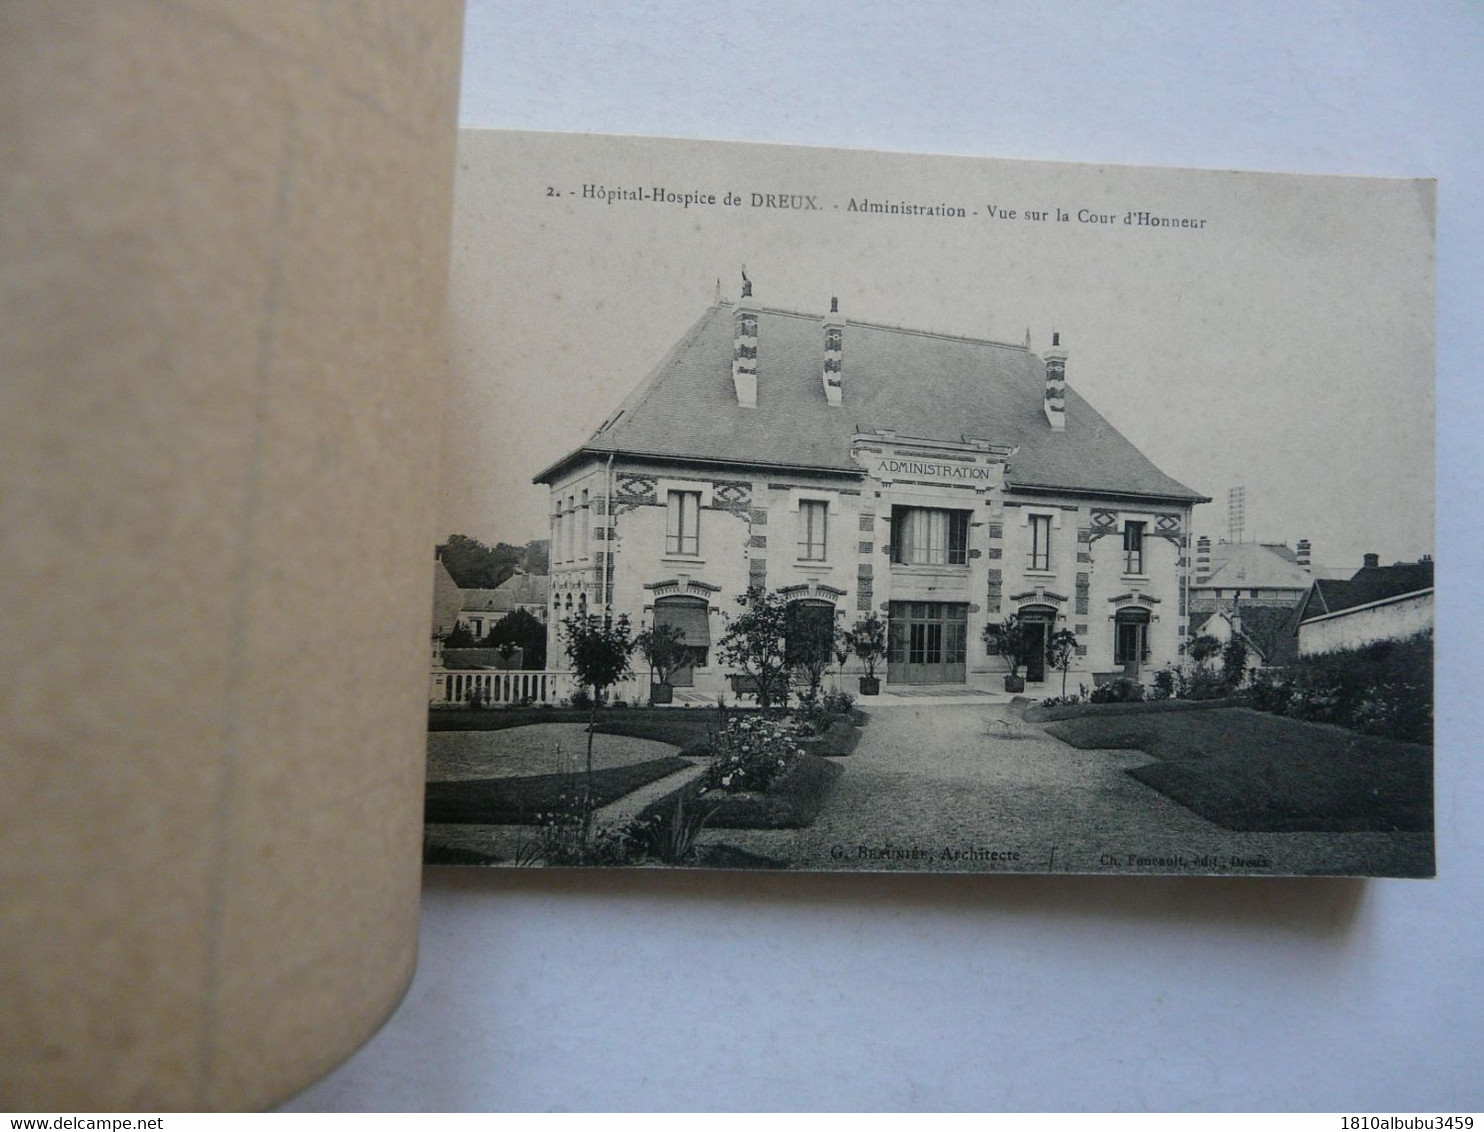 CARNET DE 12 CARTES POSTALES - VILLE DE DREUX (Eure-et-Loir) - Inauguration De L'Hôpital-Hospice 1913 - Loigny